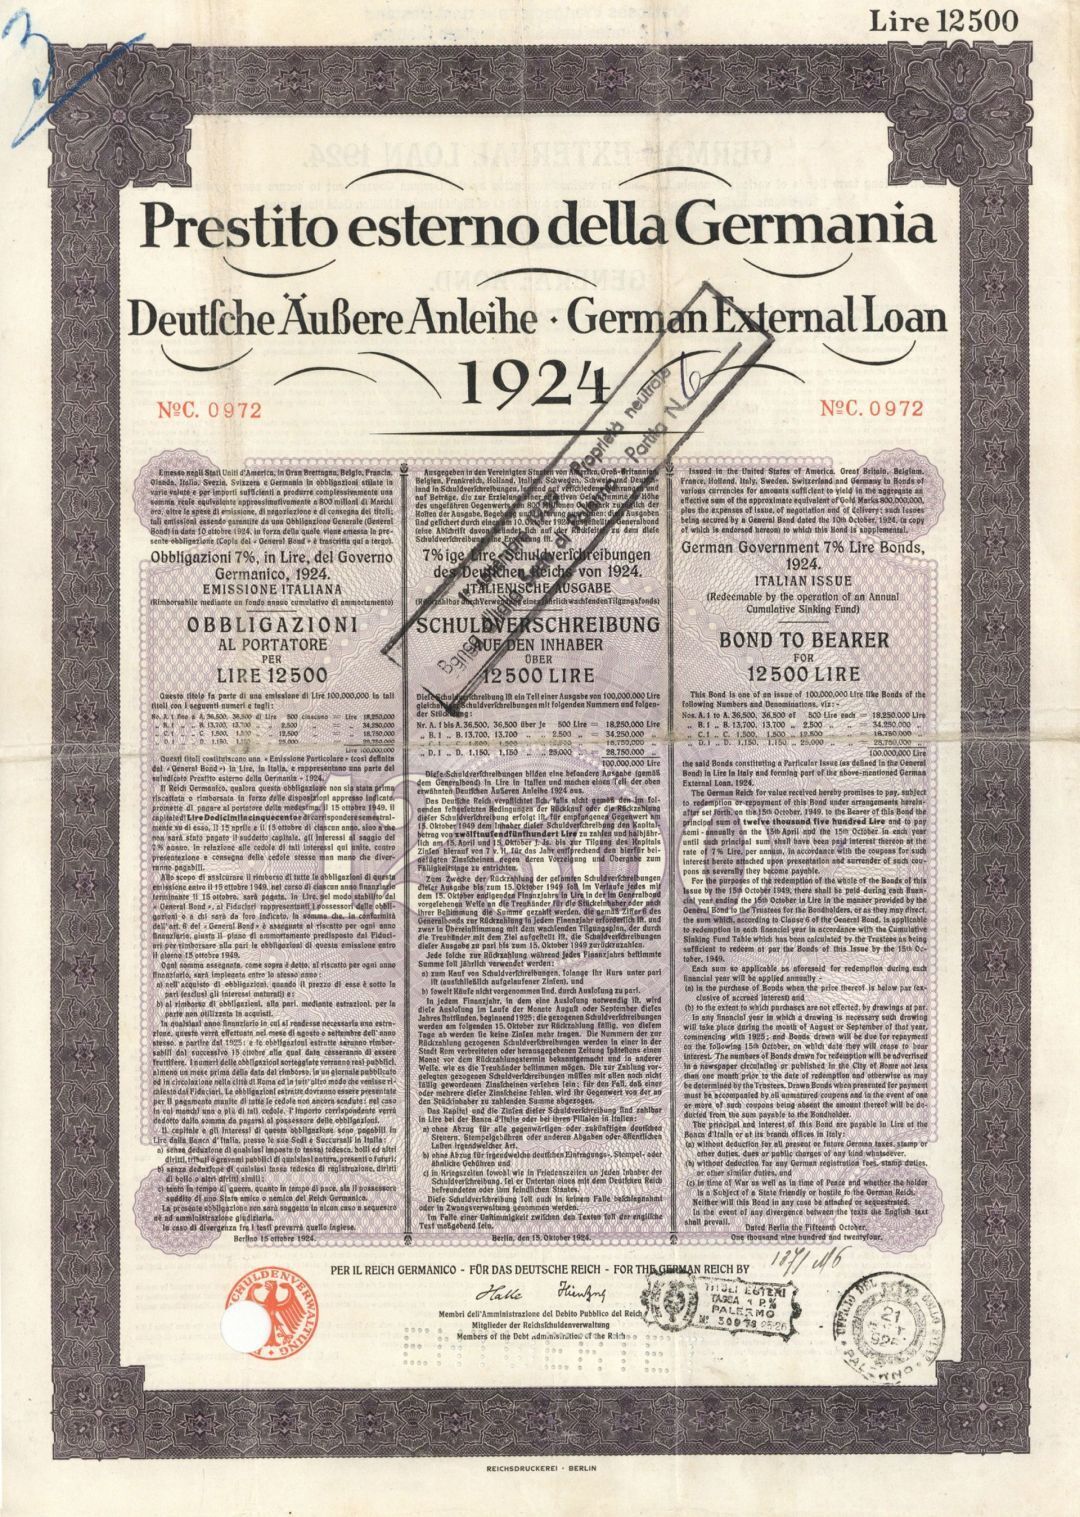 Prestito esterno della Germania - 1924 German Bond - Foreign Bonds